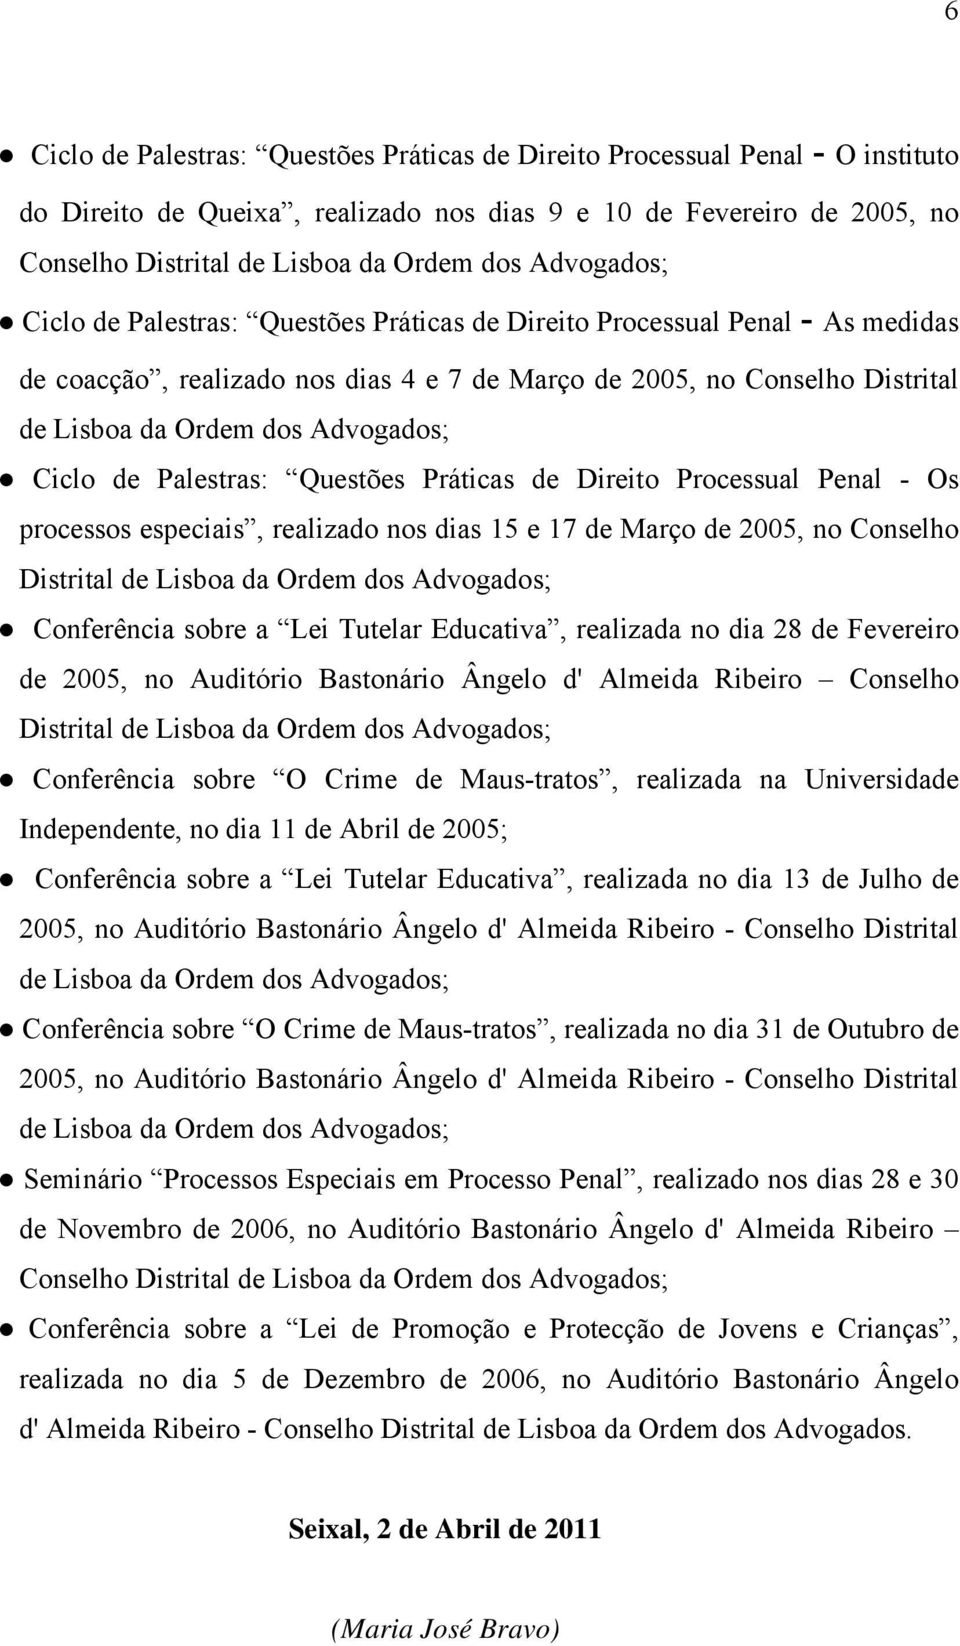 Advogados; Ciclo de Palestras: Questões Práticas de Direito Processual Penal - Os processos especiais, realizado nos dias 15 e 17 de Março de 2005, no Conselho Distrital de Lisboa da Ordem dos